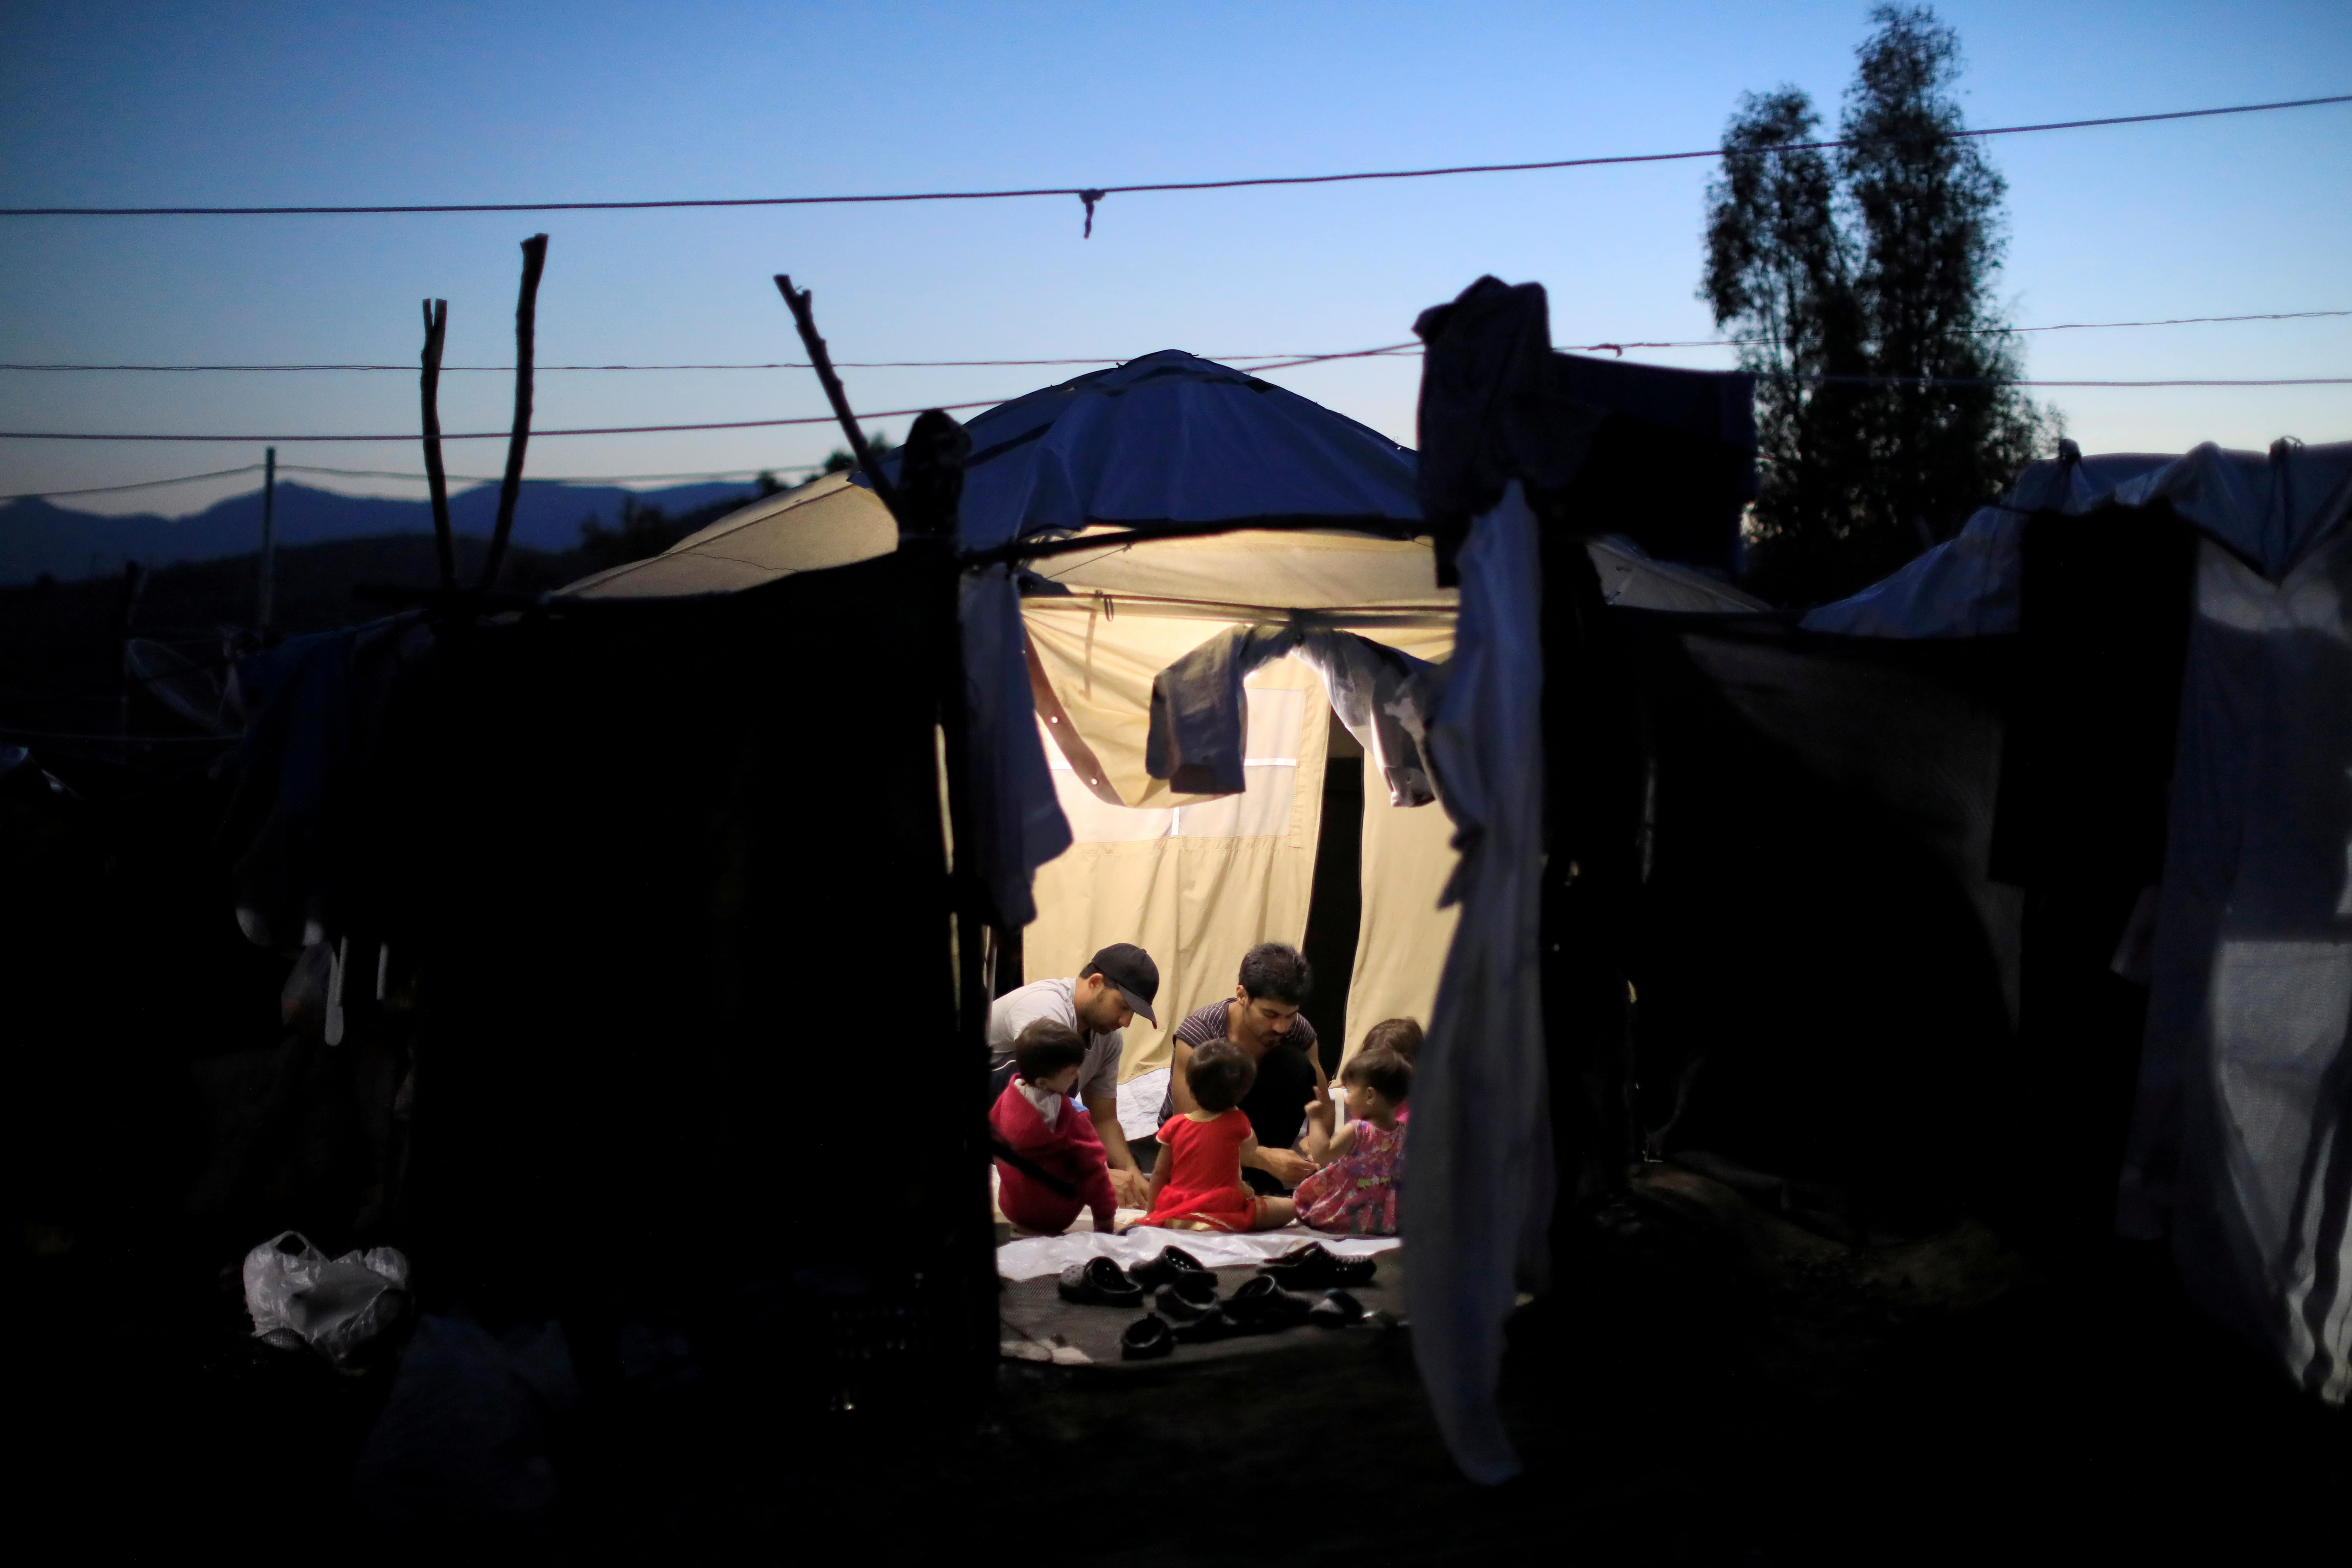 Pequeños barcos con refugiados llegan a Lesbos y otras islas griegas cerca de Turquía todas las semanas